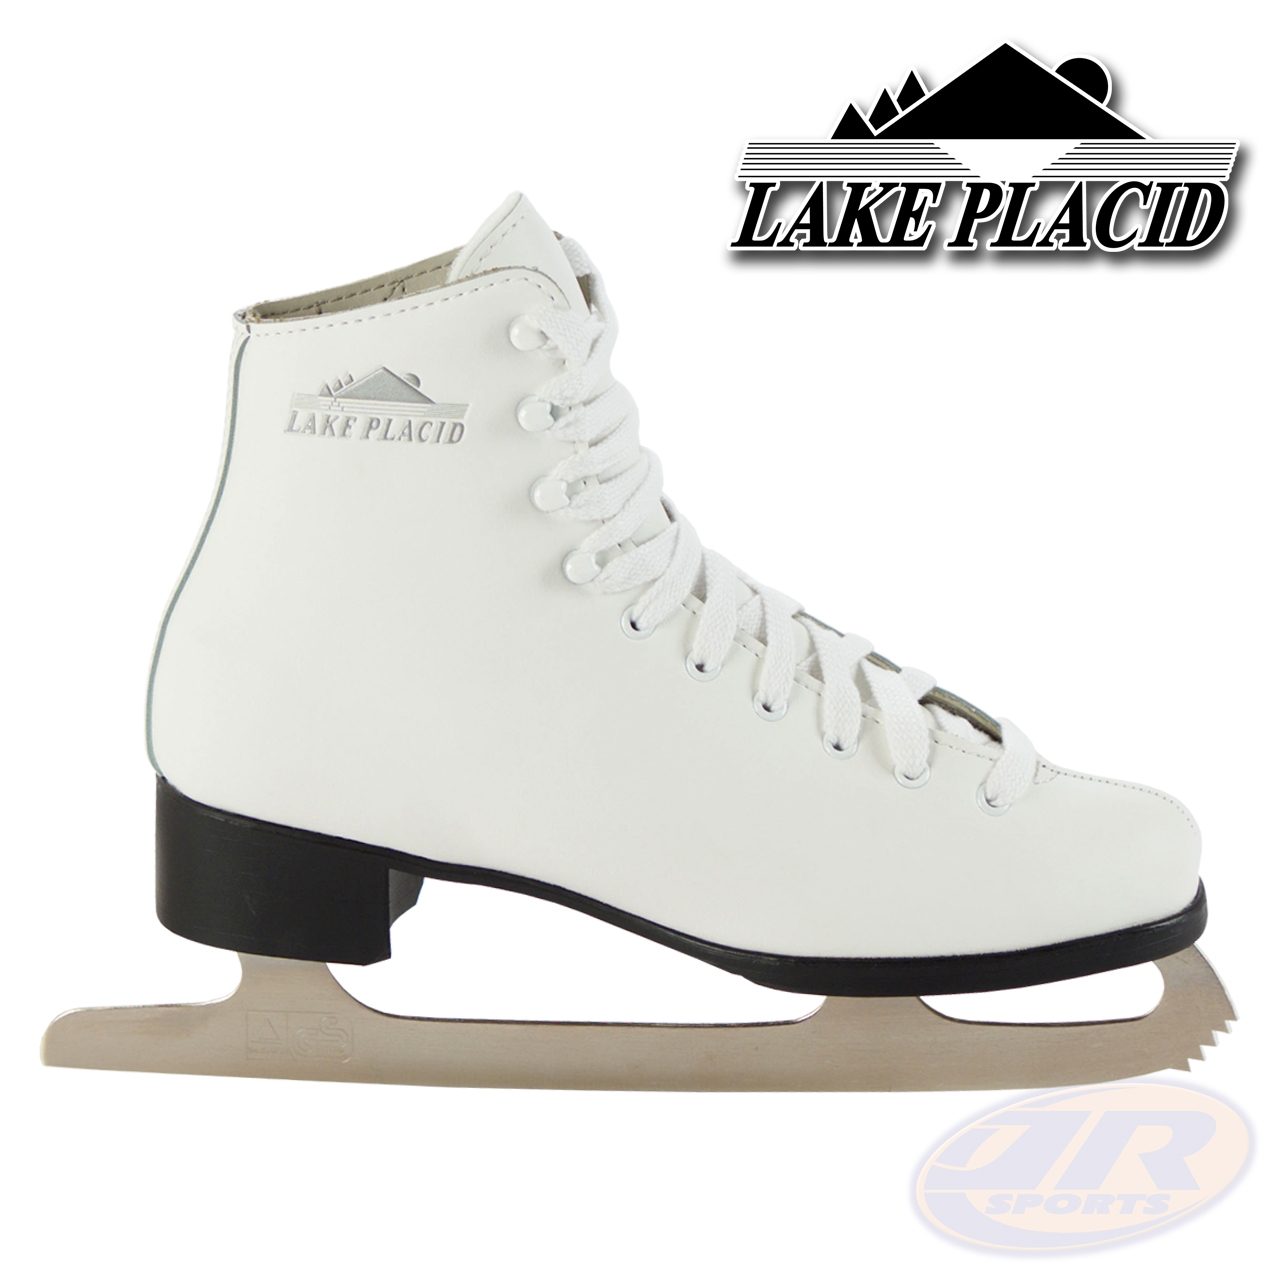 Lake placid skates